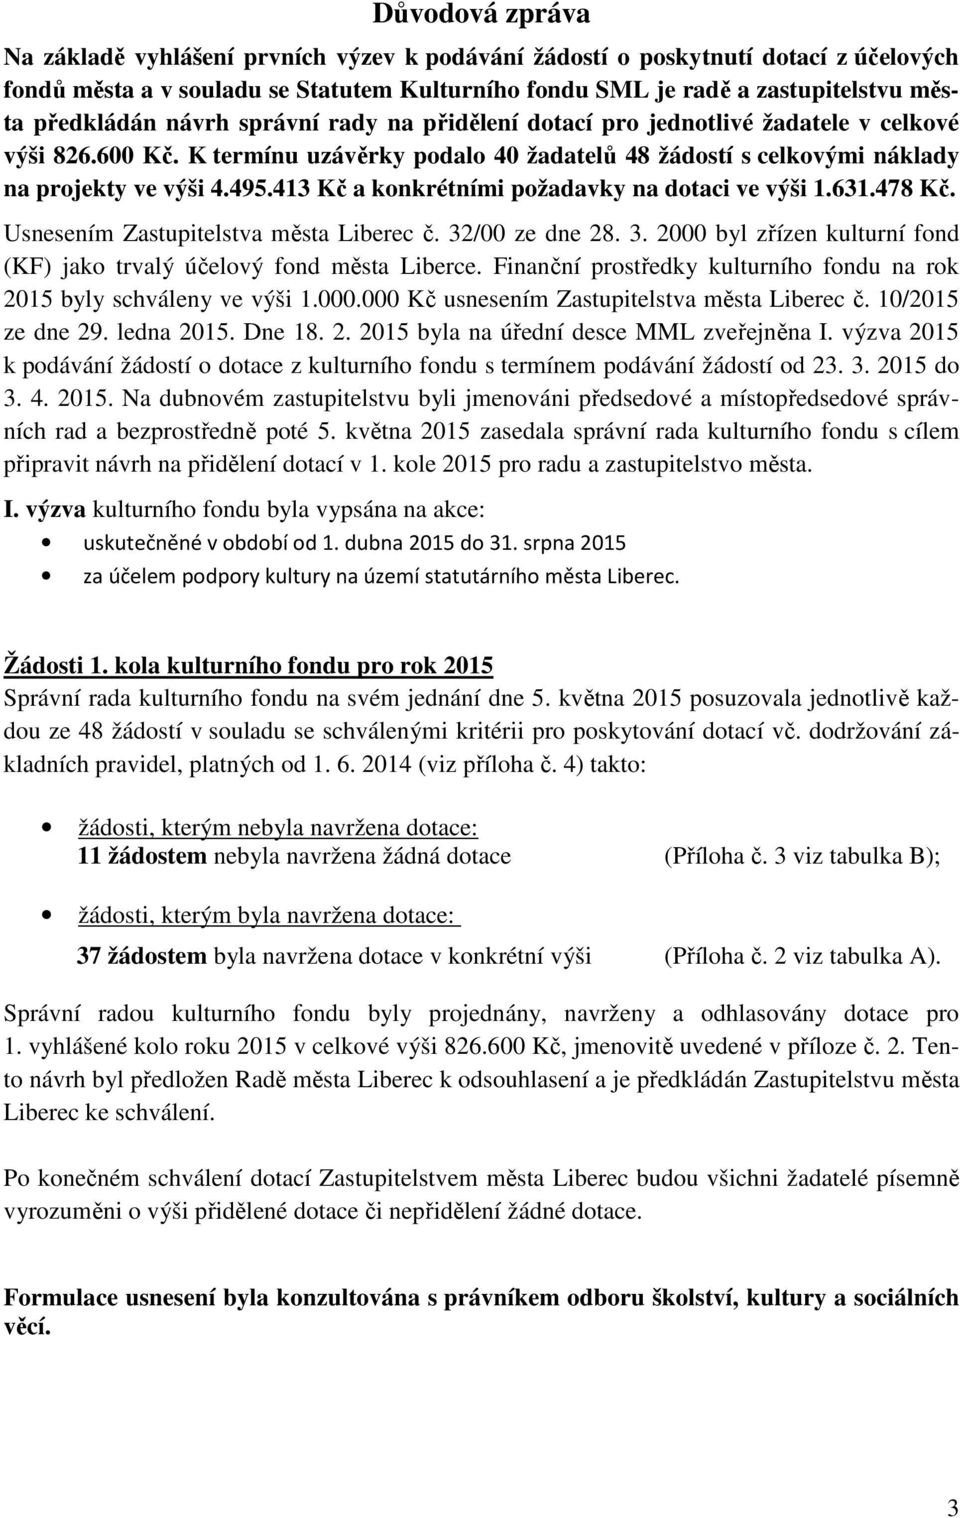 413 Kč a konkrétními požadavky na dotaci ve výši 1.631.478 Kč. Usnesením Zastupitelstva města Liberec č. 32/00 ze dne 28. 3. 2000 byl zřízen kulturní fond (KF) jako trvalý účelový fond města Liberce.